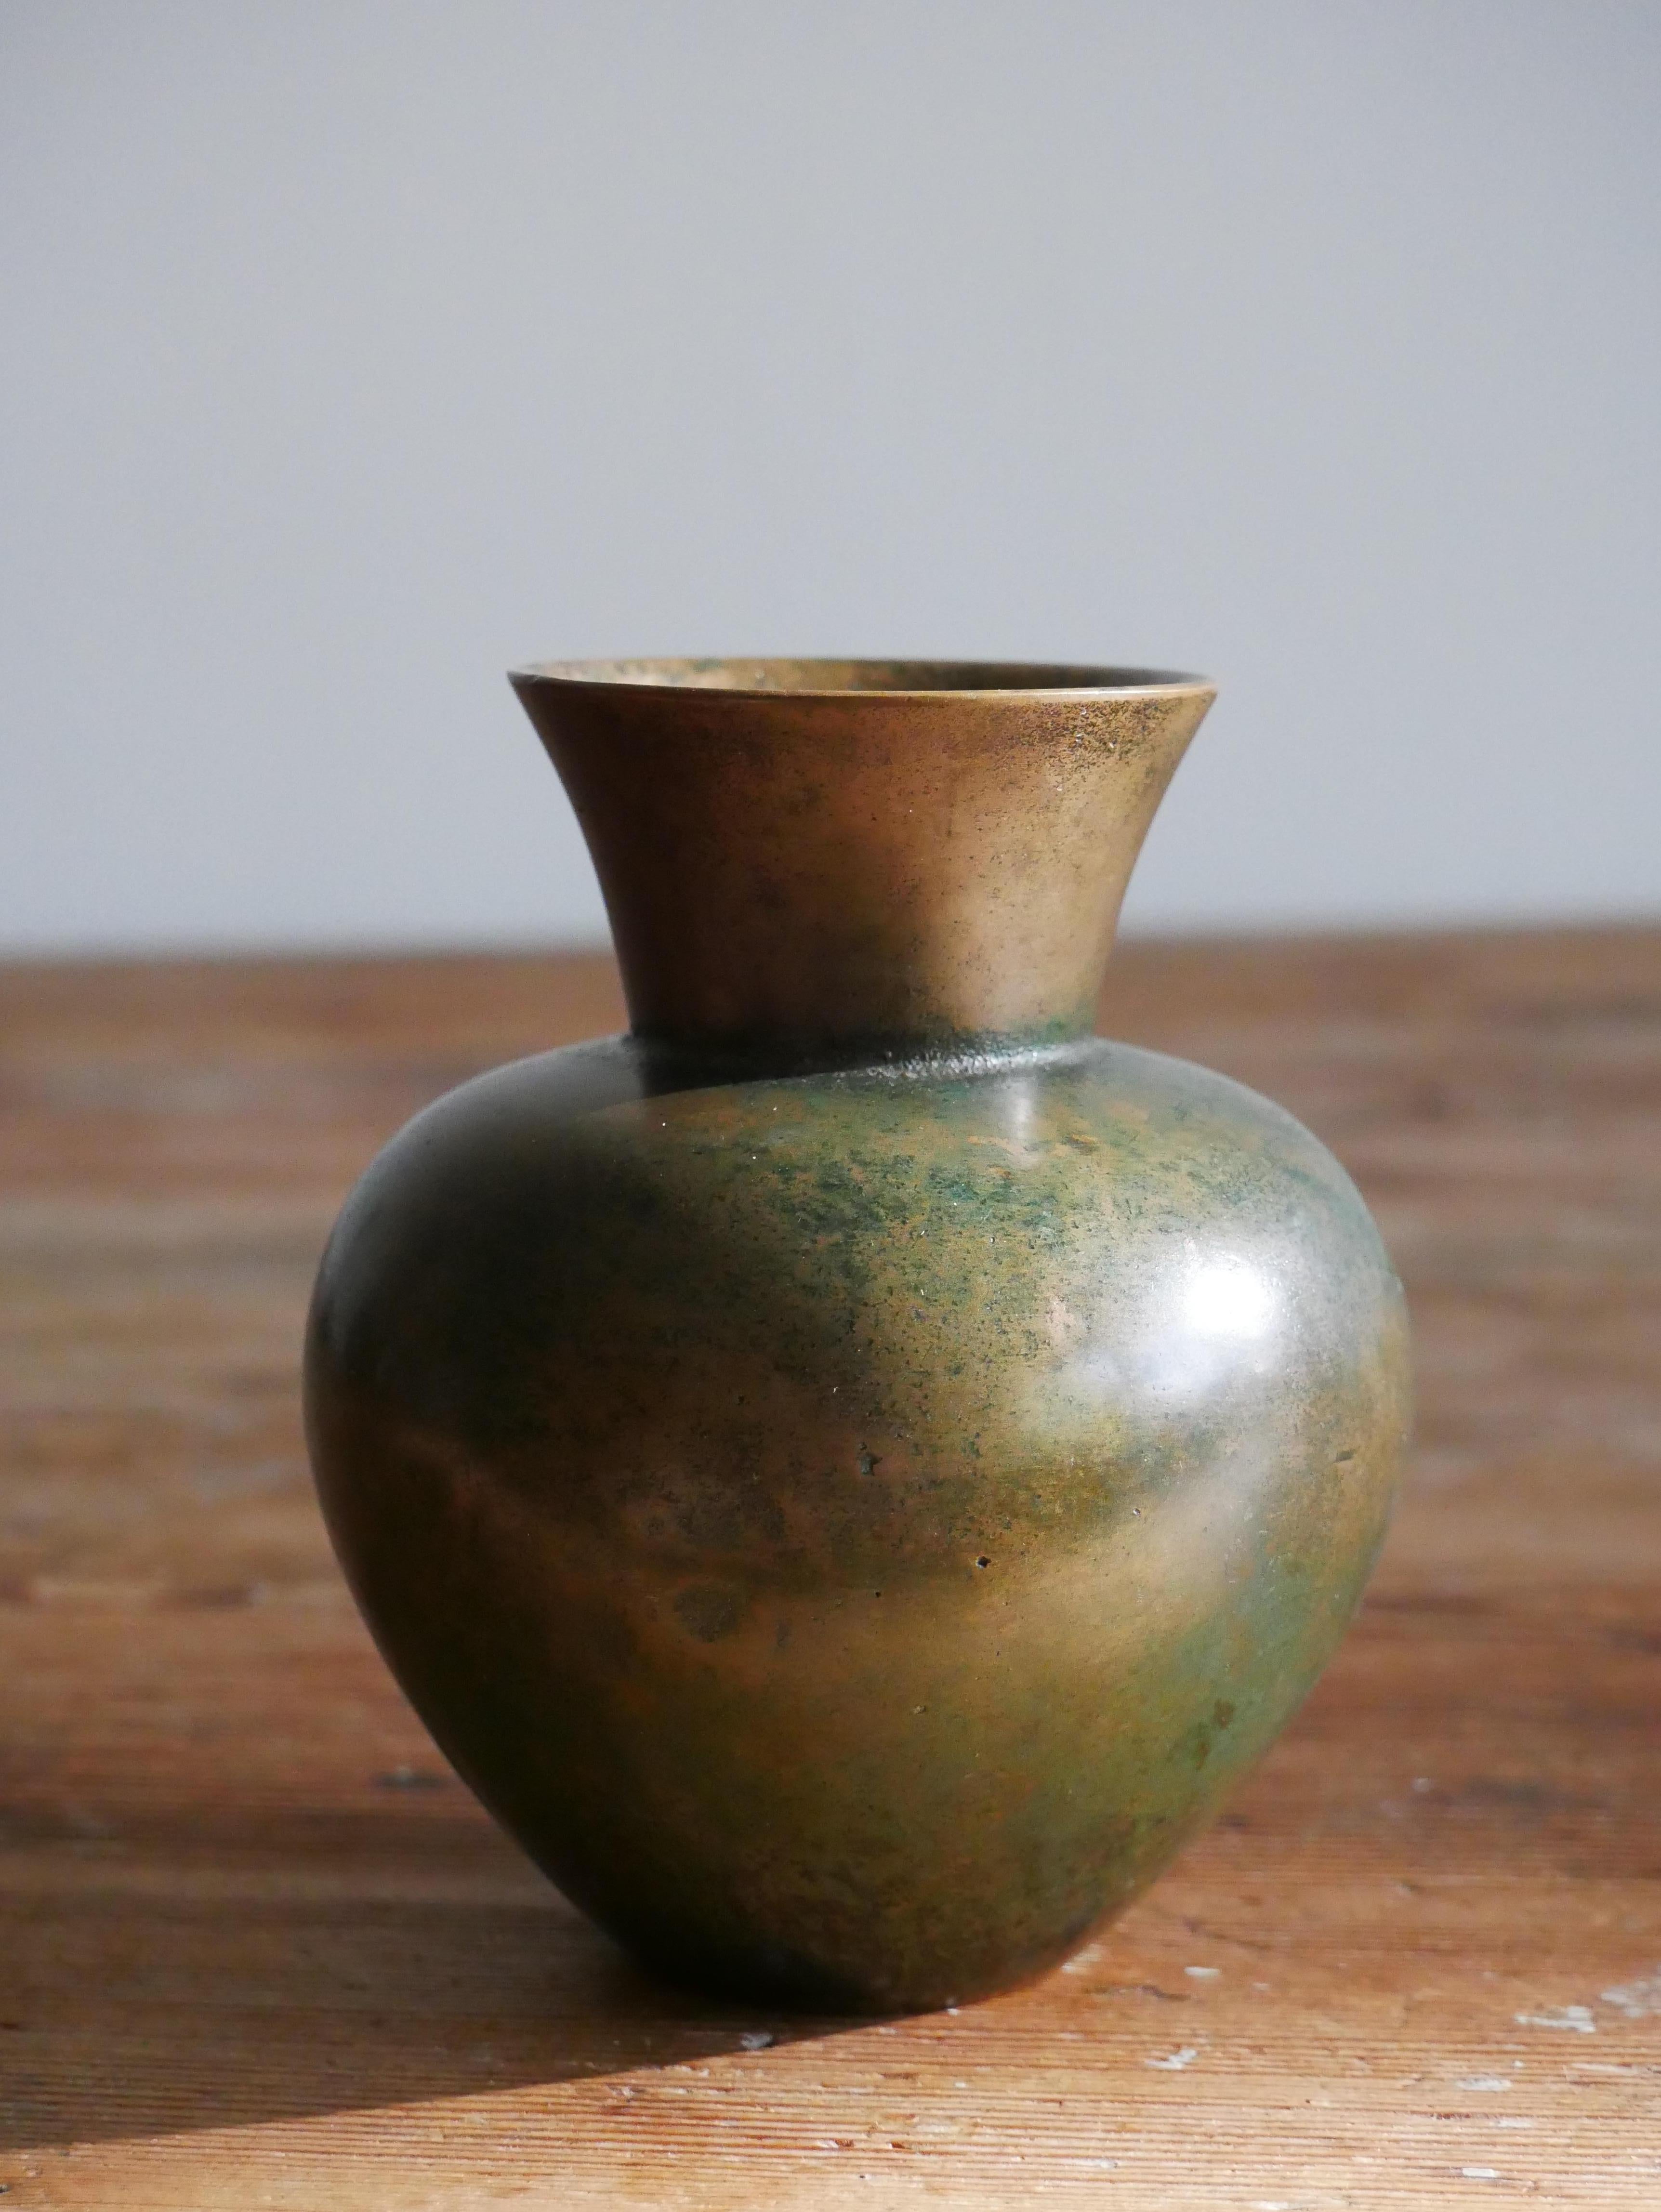 Vase conçu et produit par GAB, Guldsmedsaktiebolaget, Suède, années 1930. 
Estampillé avec la marque du fabricant. 
Fabriqué en bronze moulé.